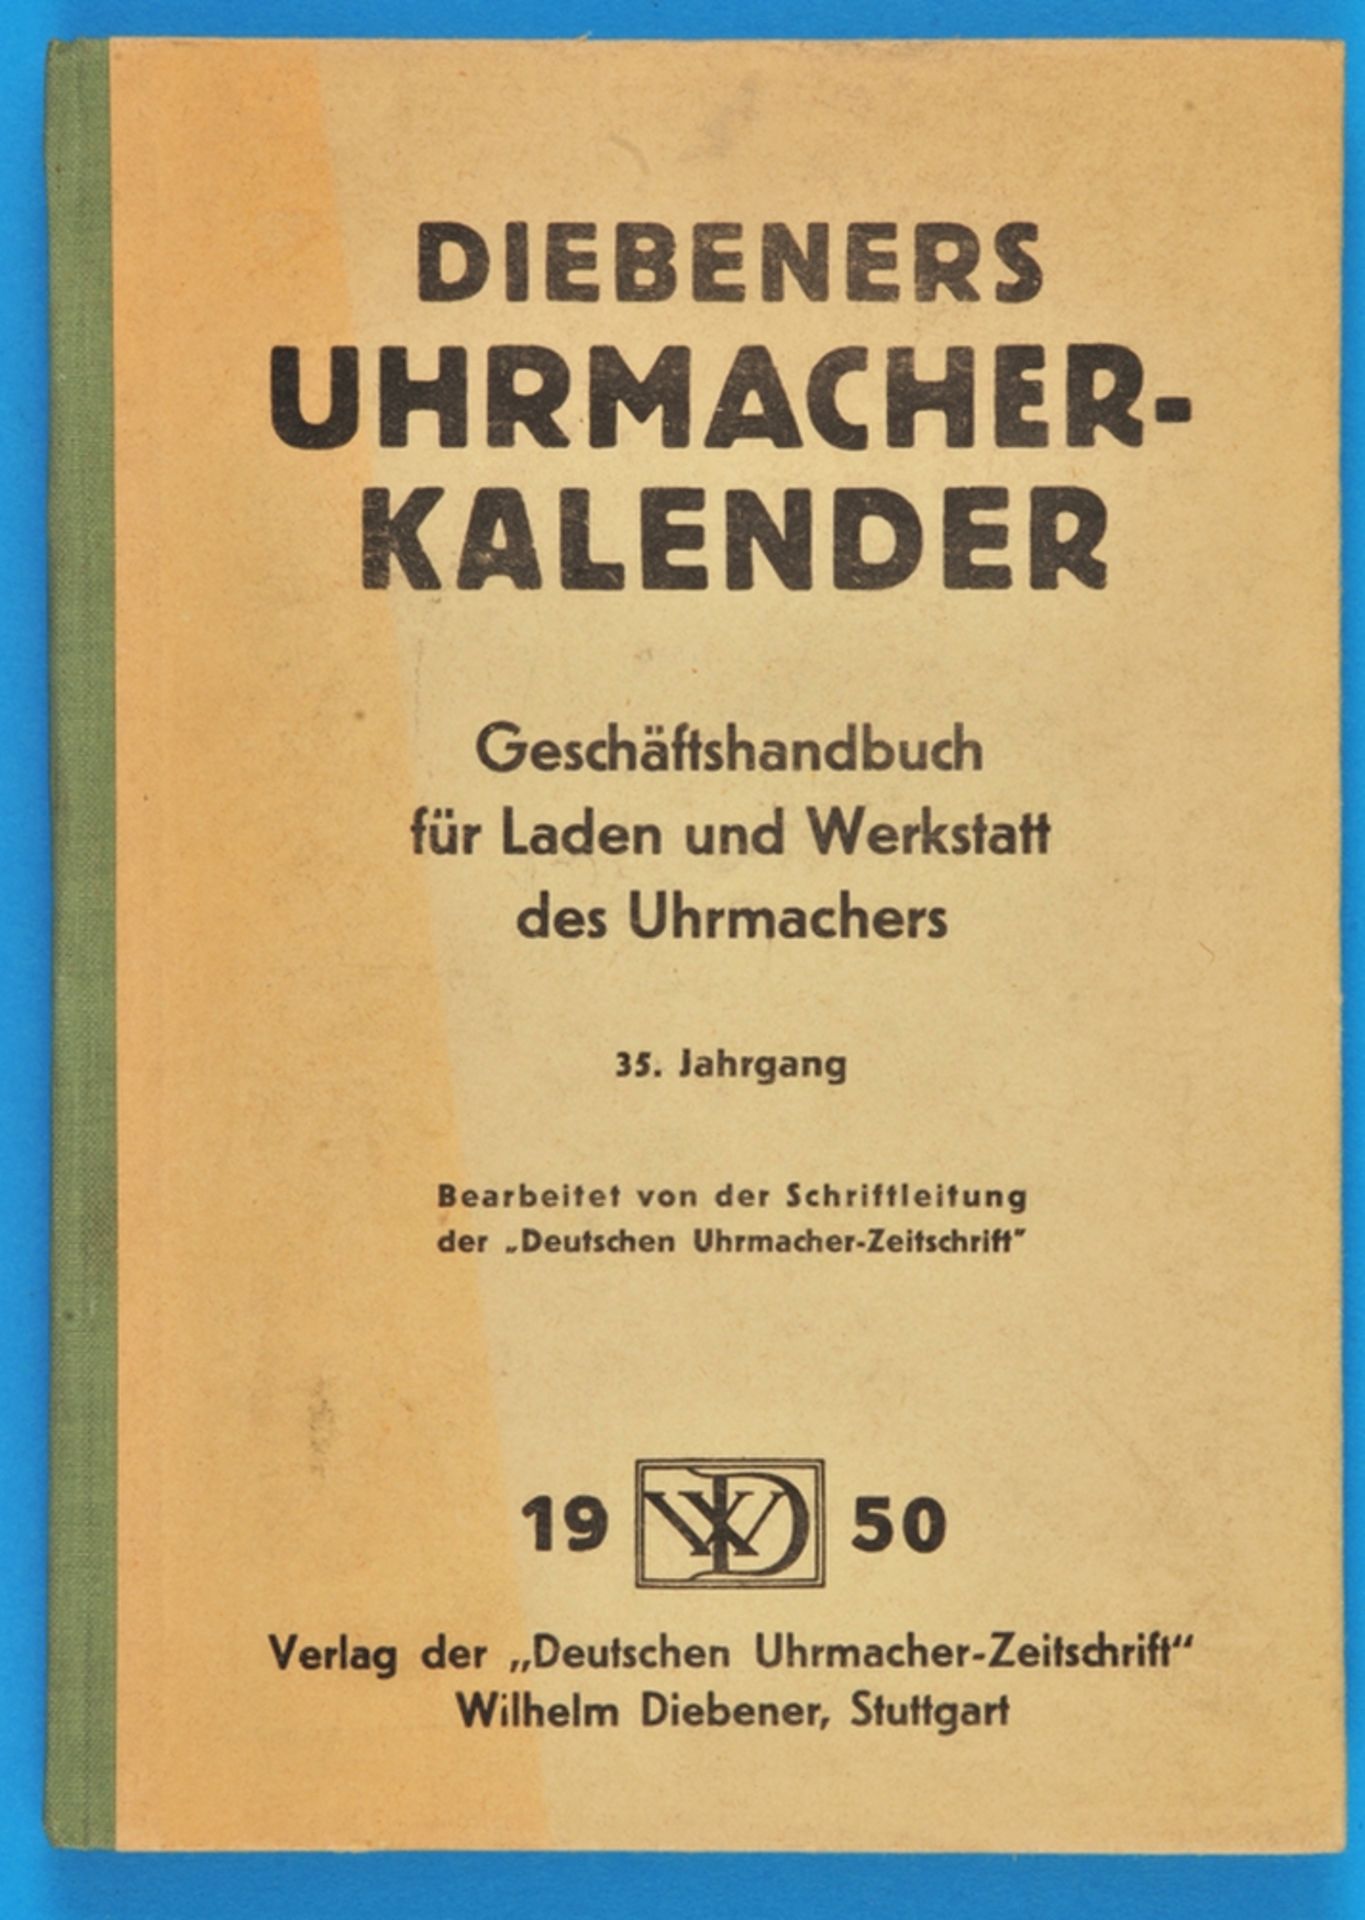 Diebeners Uhrmacher-Kalender 1950, Geschäftshandbuch für Laden und Werkstatt des Uhrmachers